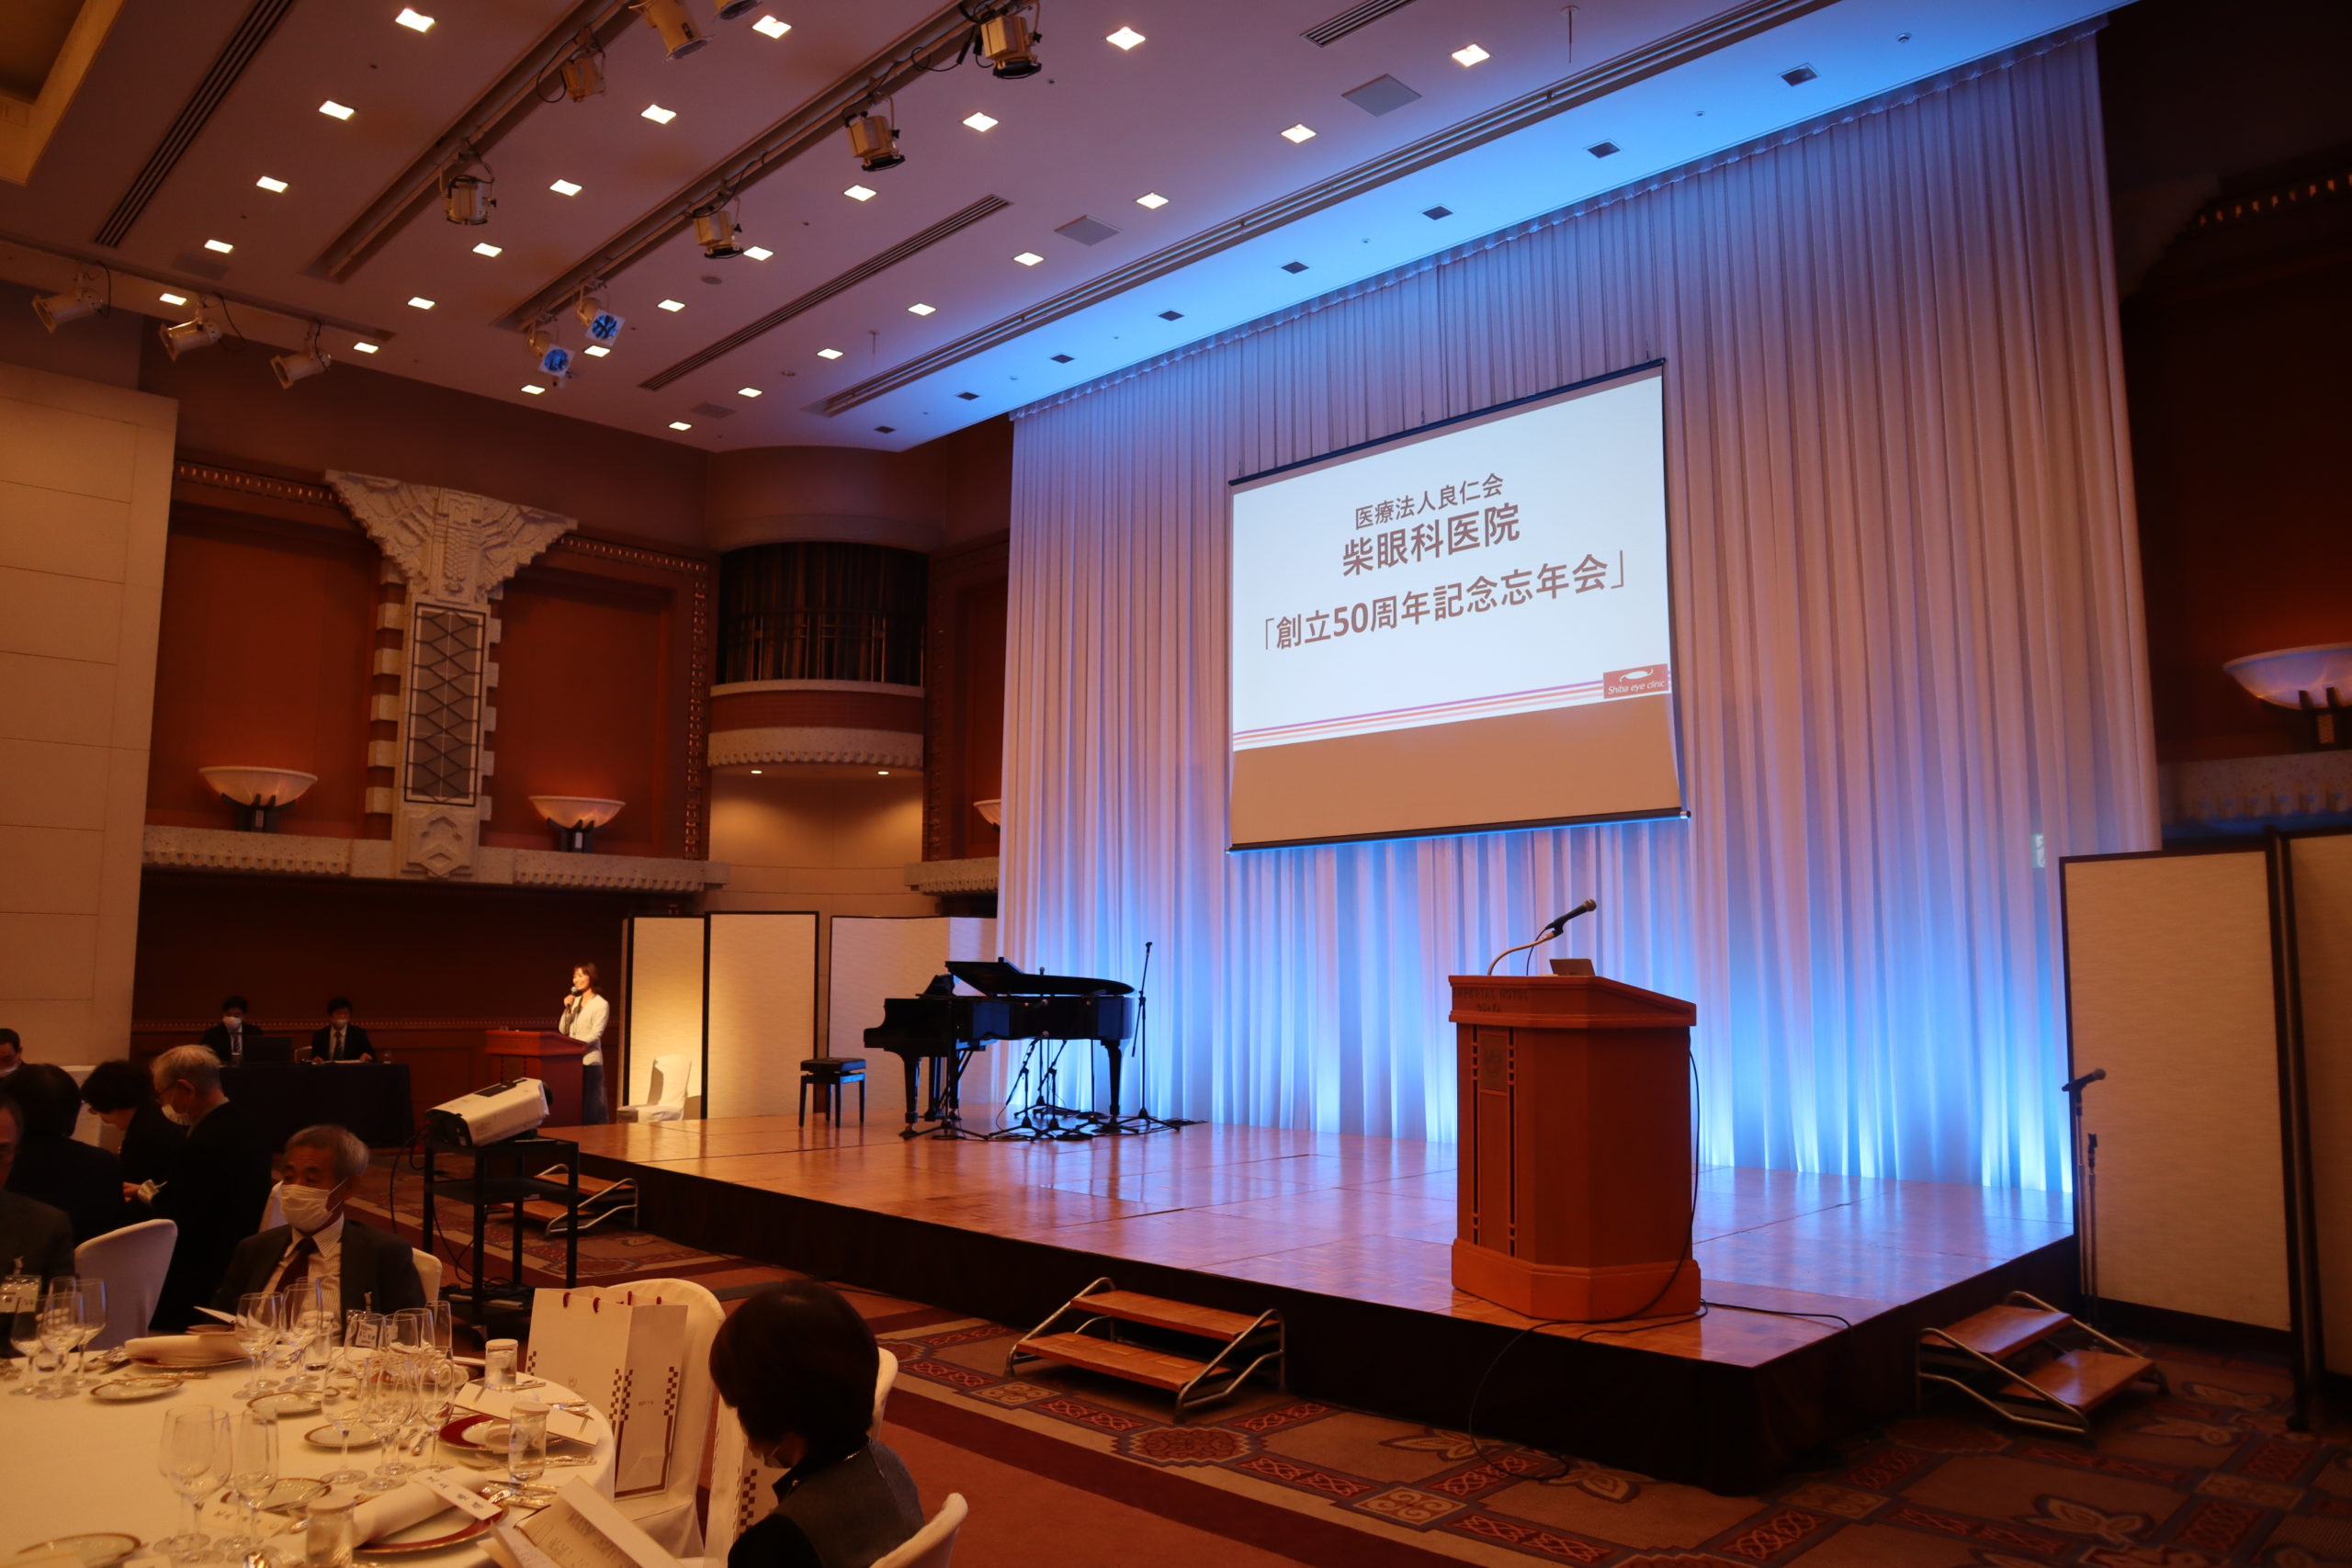 柴眼科医院さんより『創立50周年記念イベント」の開催に協力いたしました。